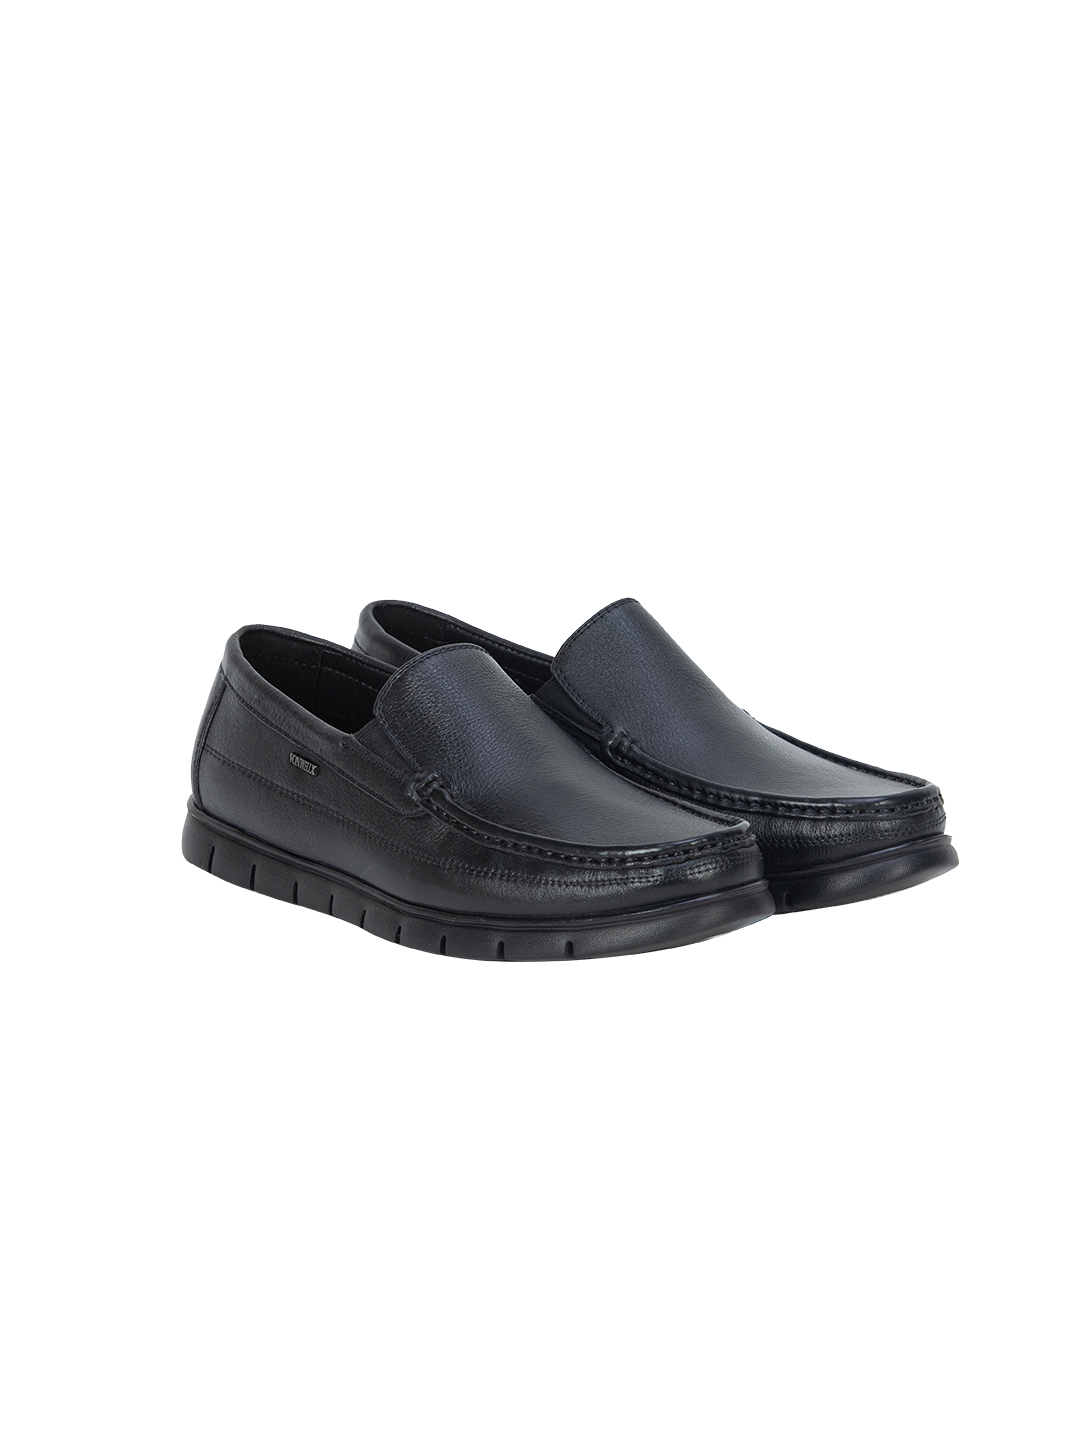 Buy Von Wellx Germany Comfort Black Zion Shoes Online in Qatar